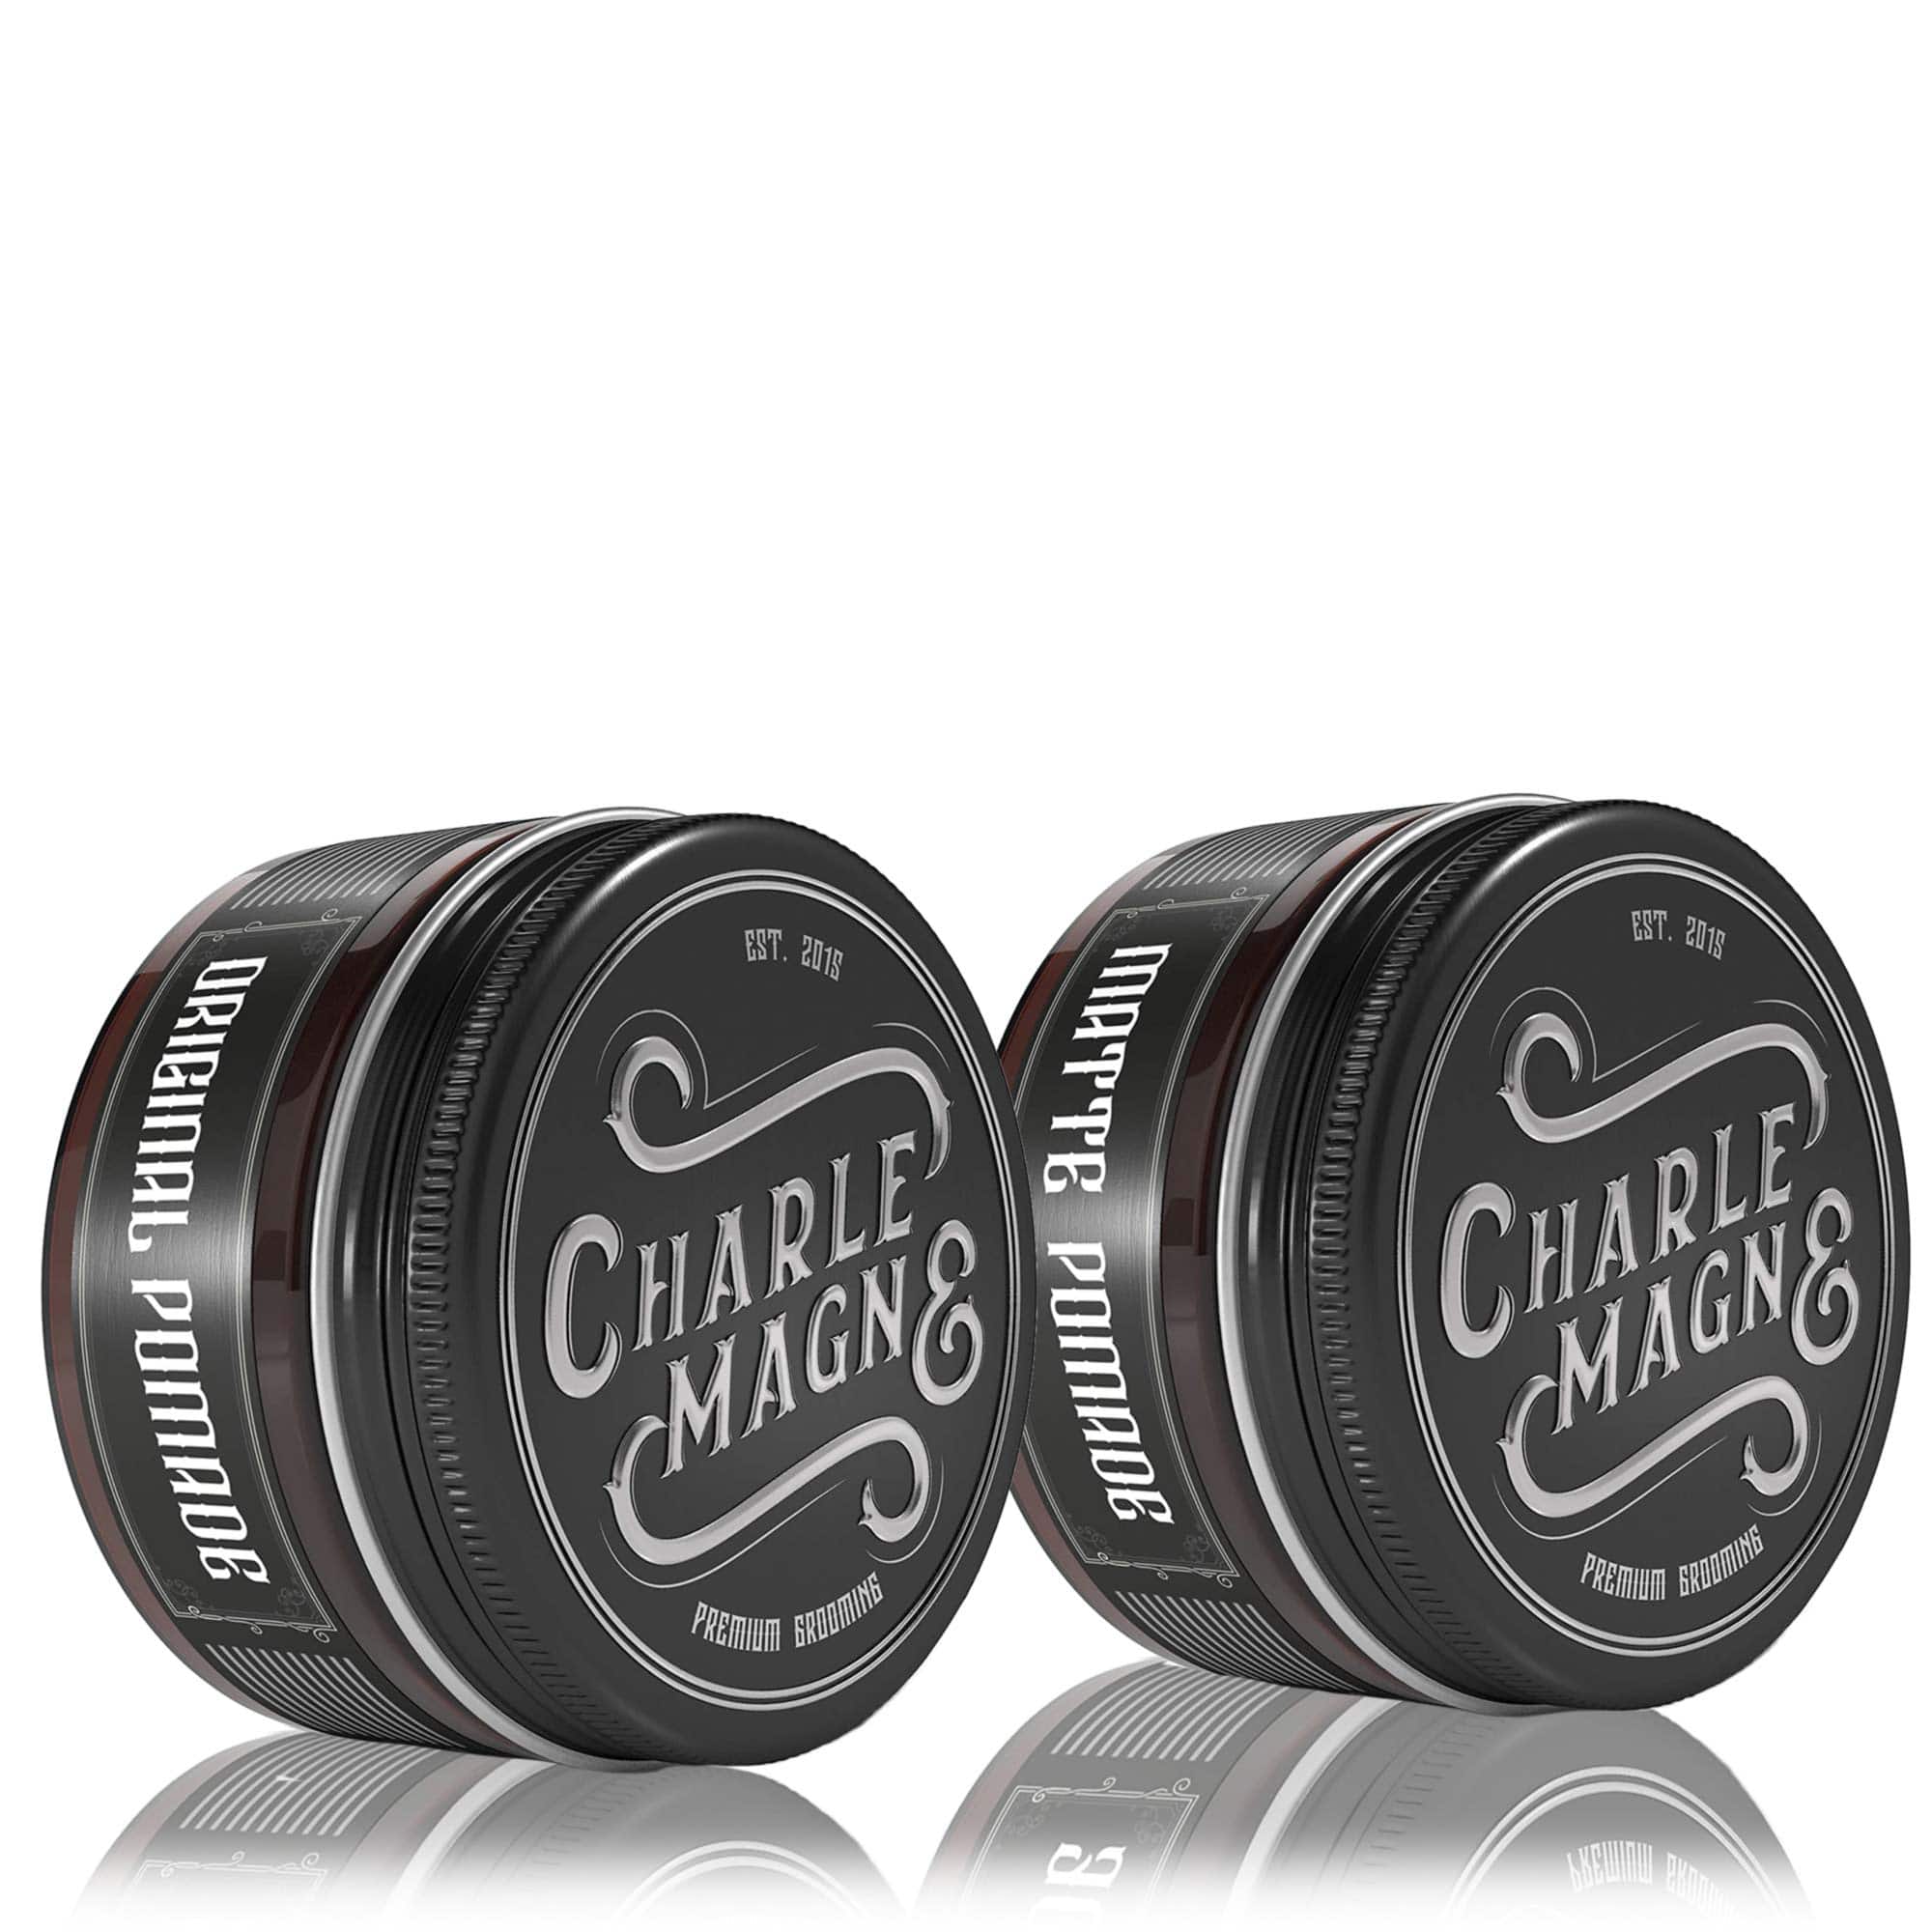 Charlemagne Premium • Haarstyling und Bartpflege Made in